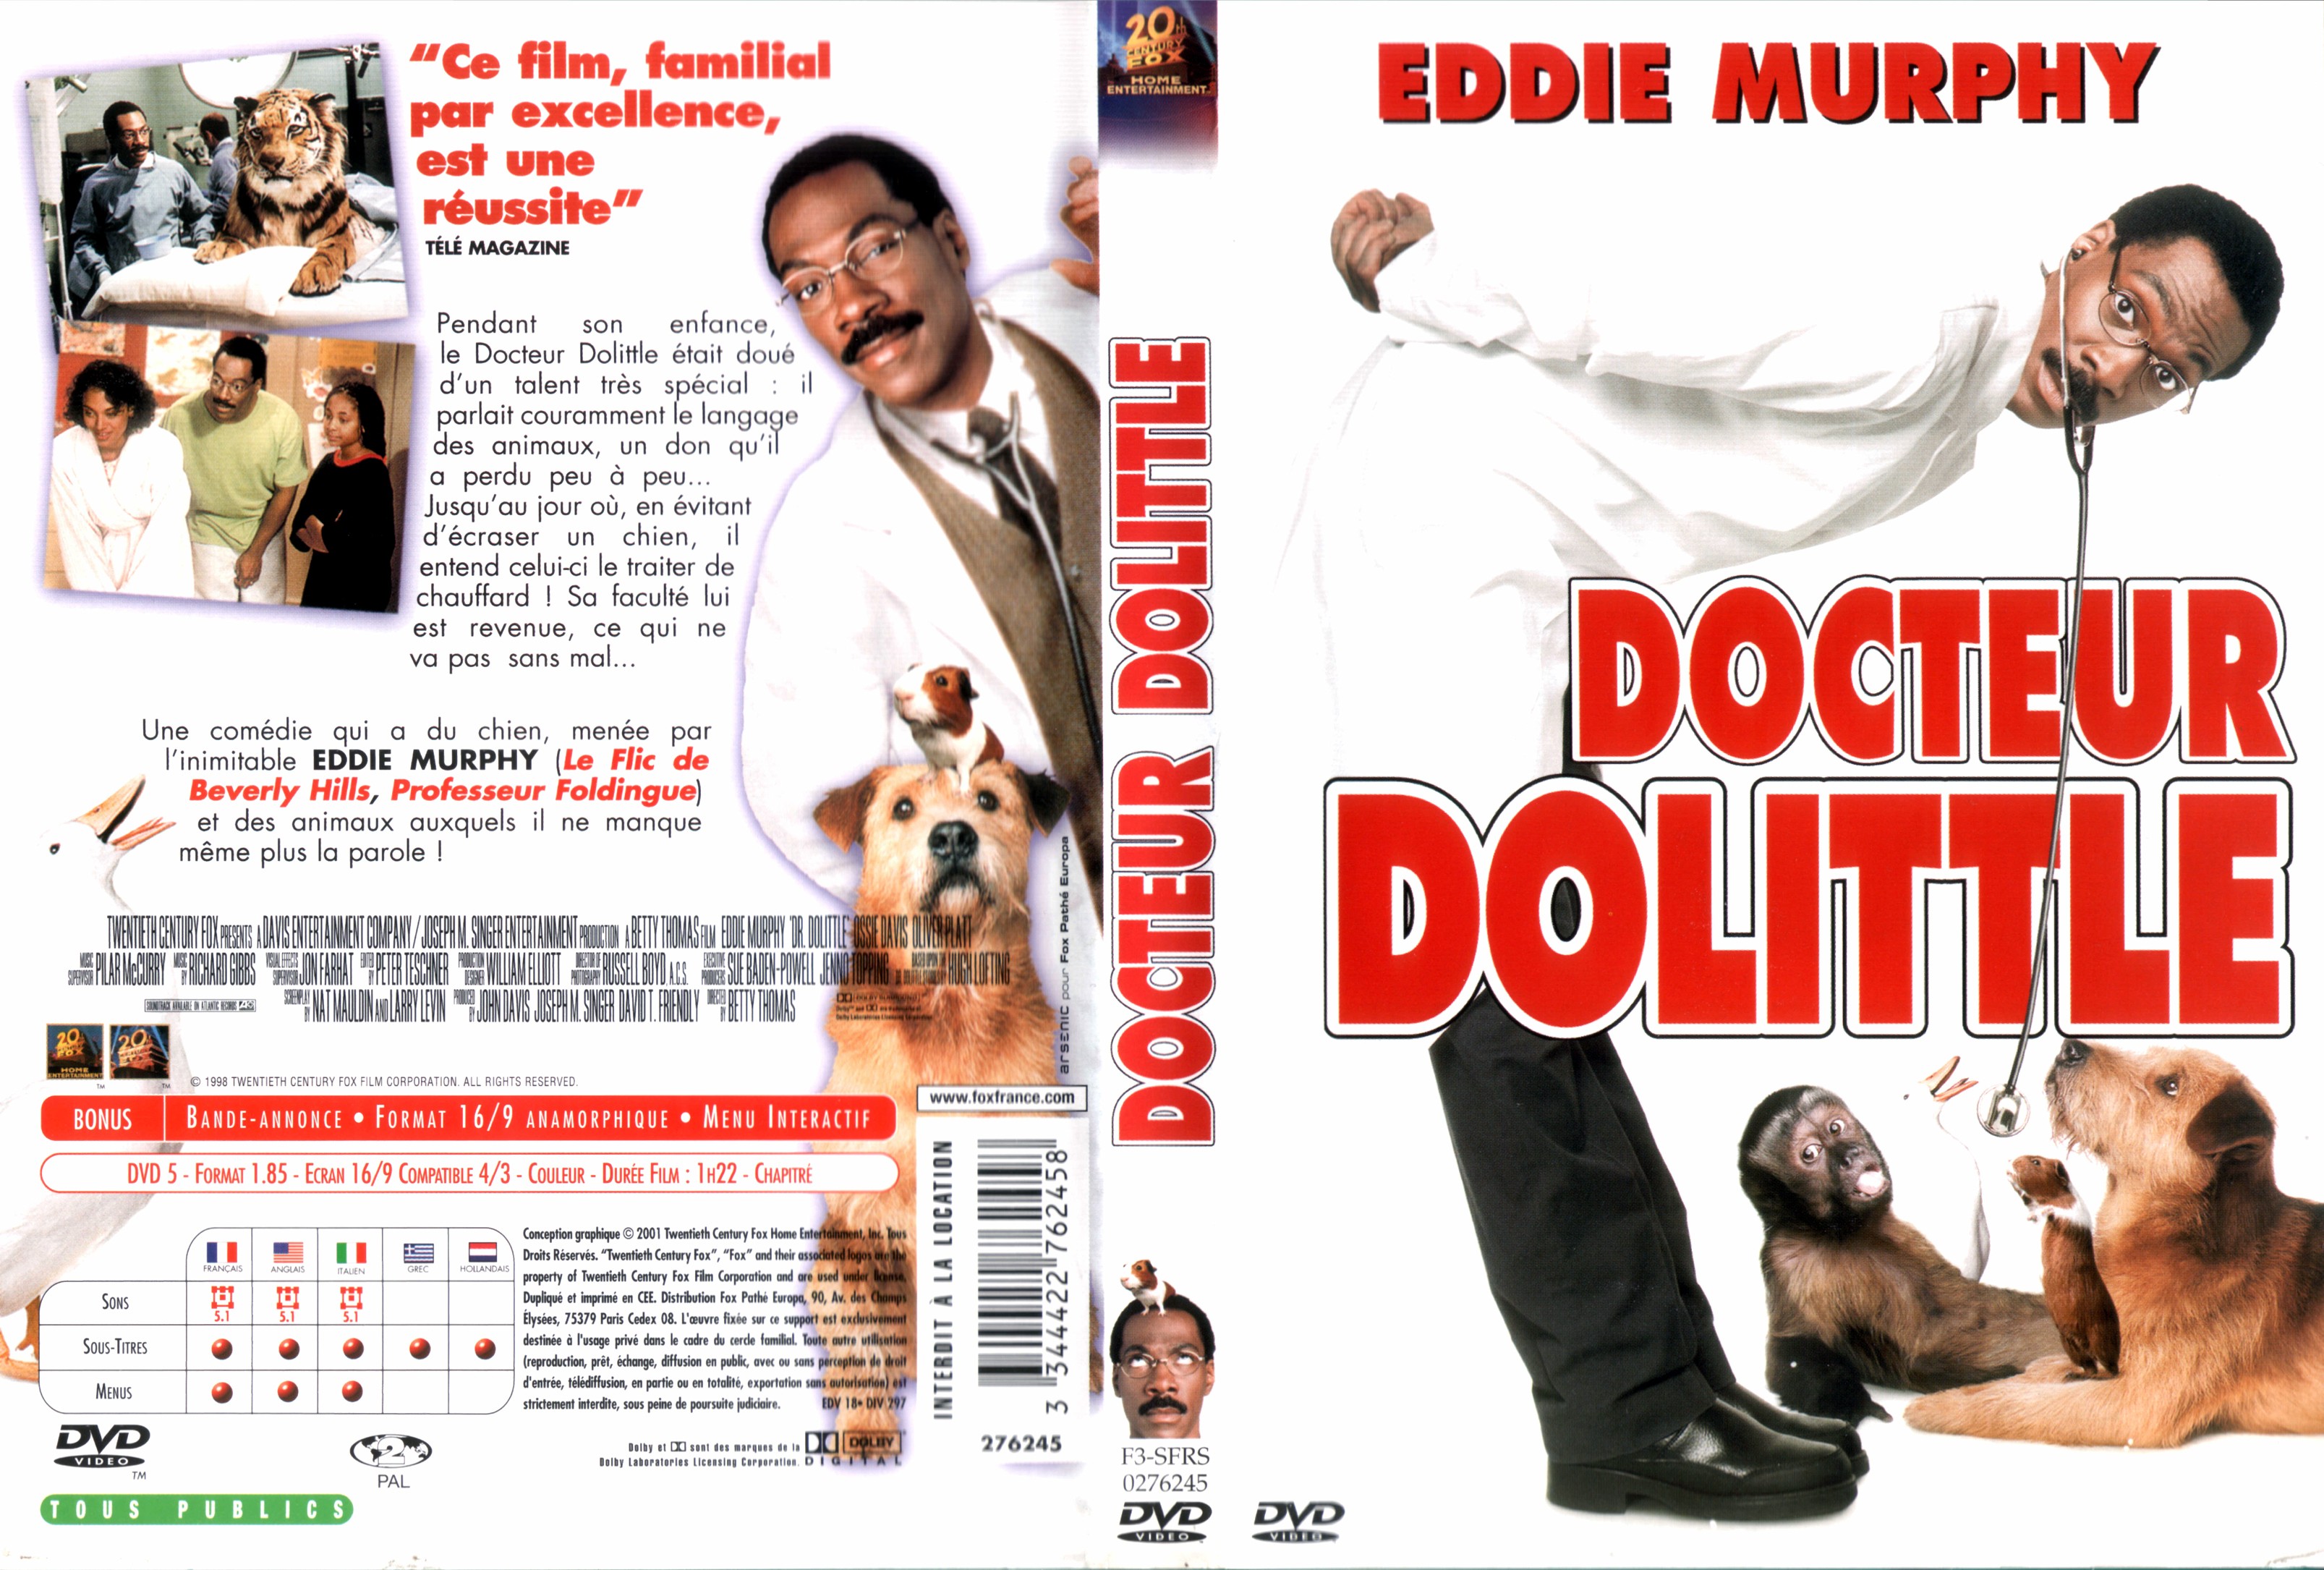 Jaquette DVD Docteur Dolittle